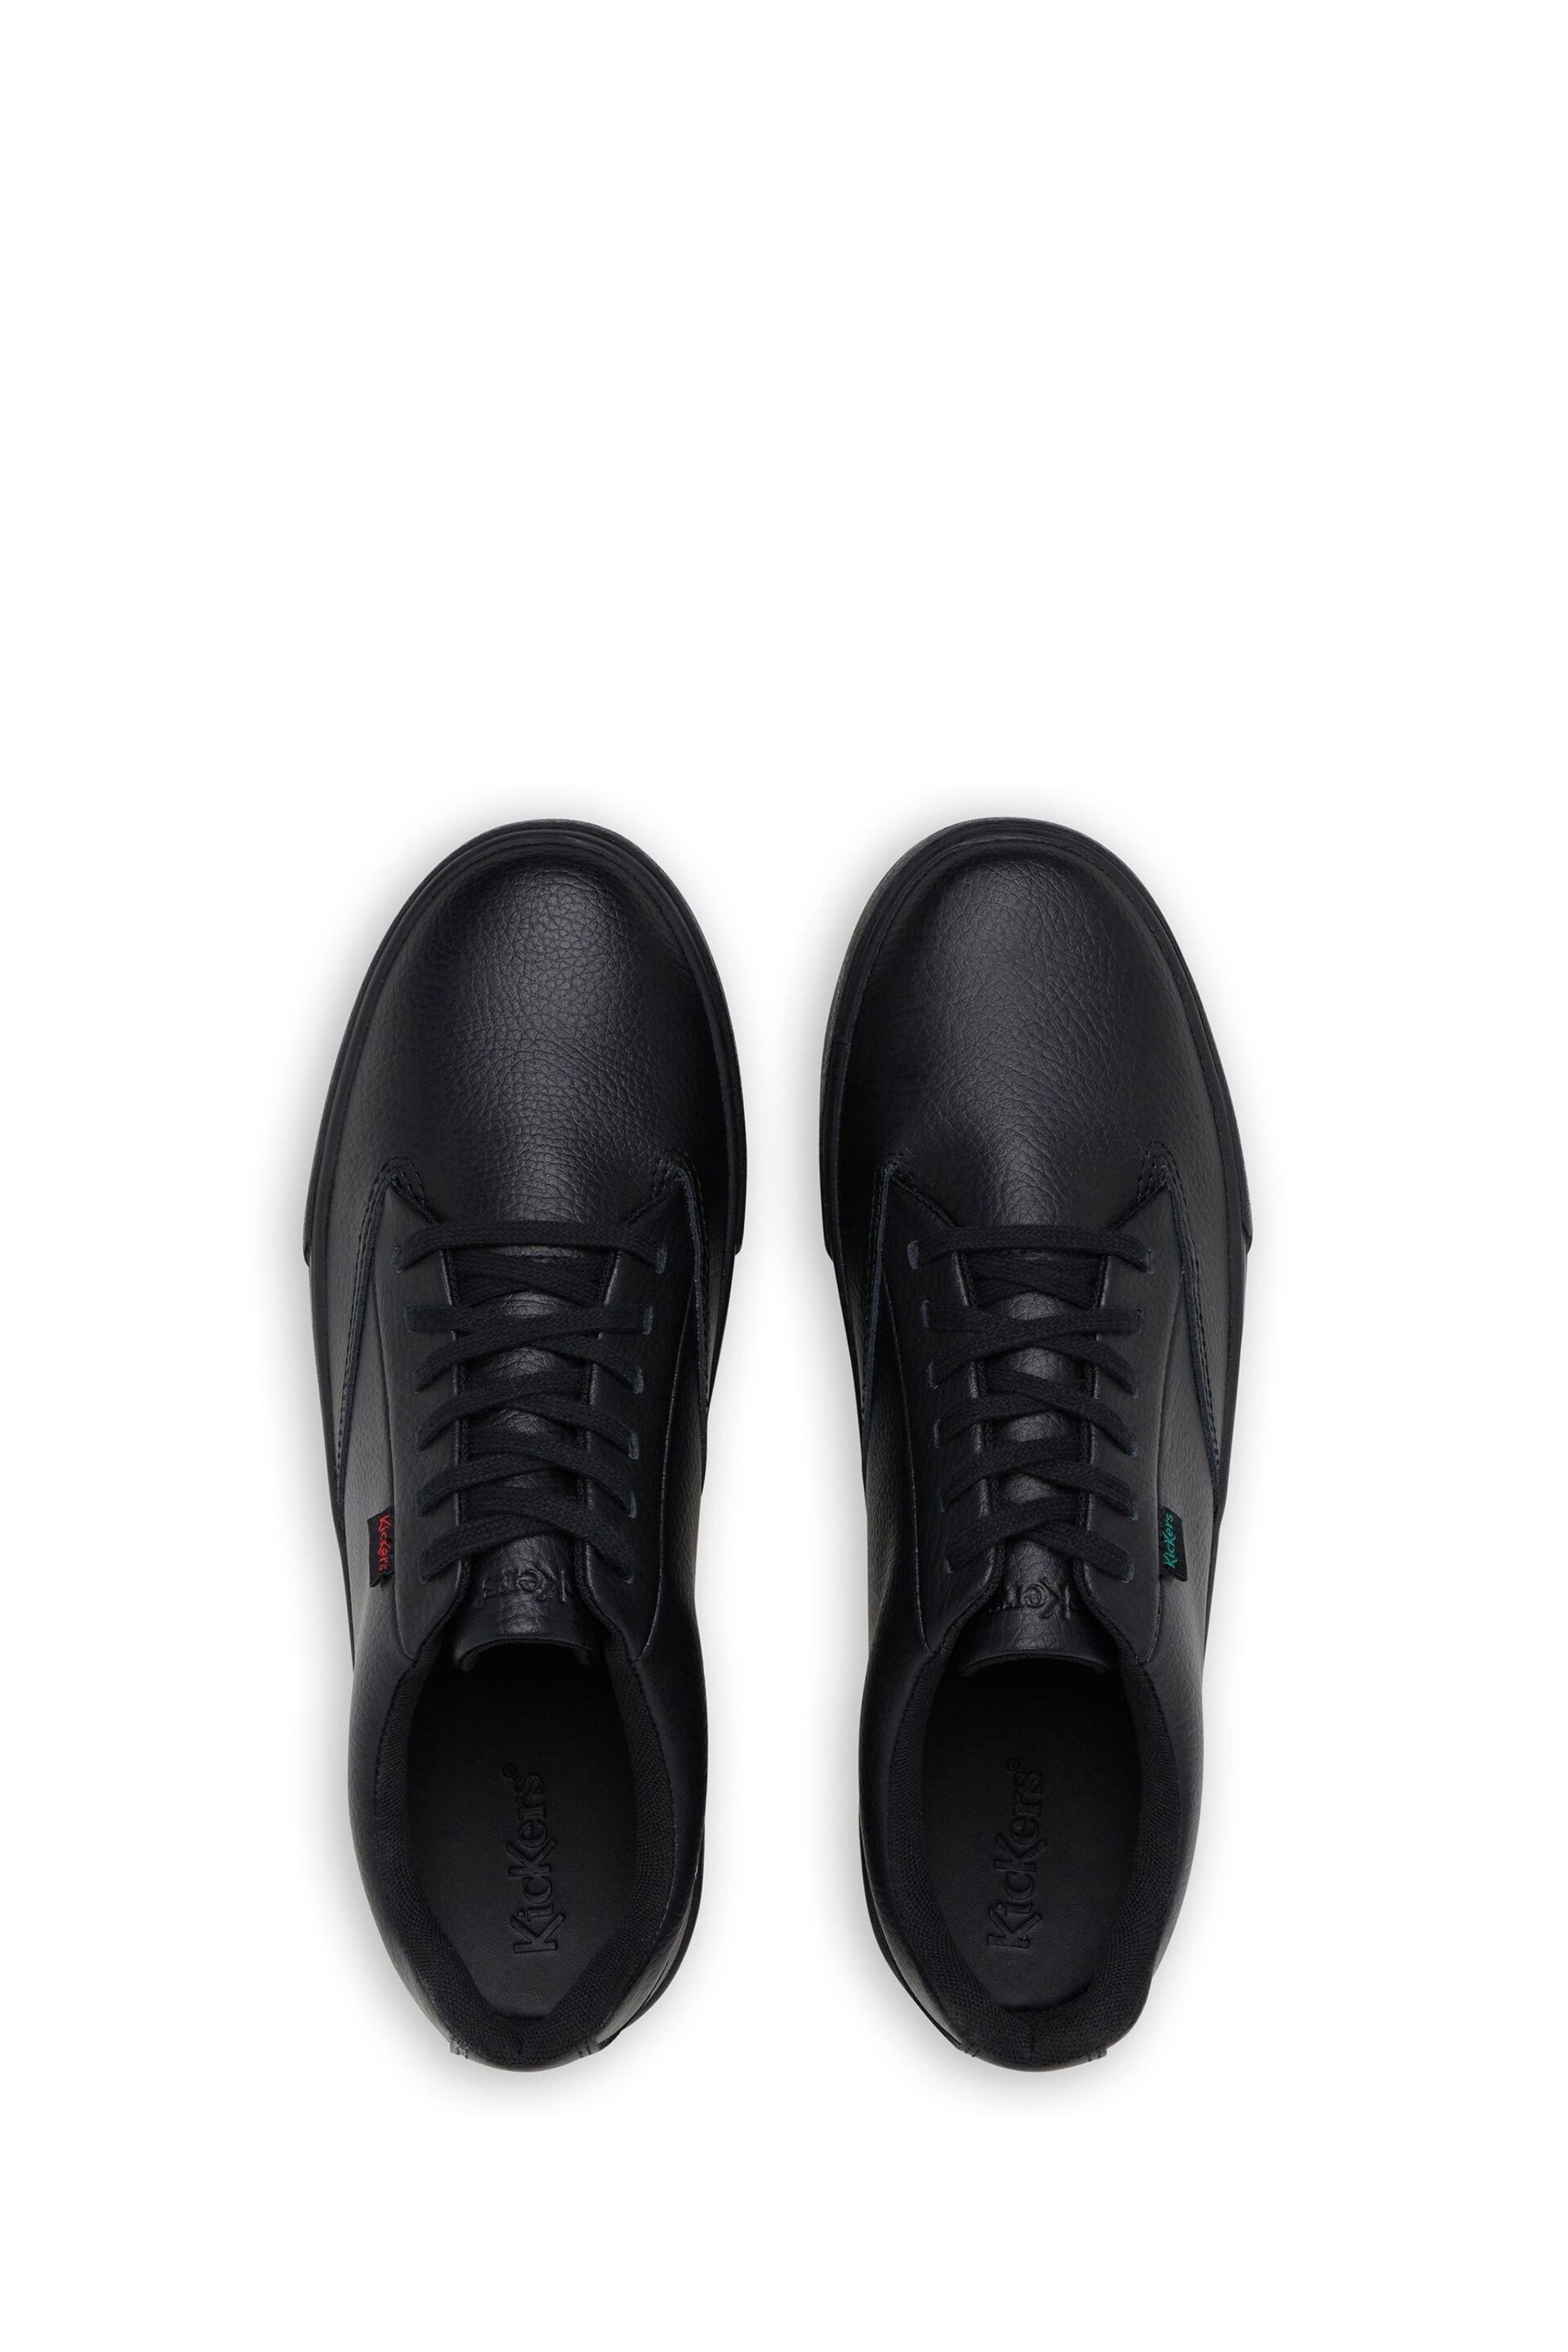 Kickers Black Tovni Tumble Shoes - Image 6 of 6